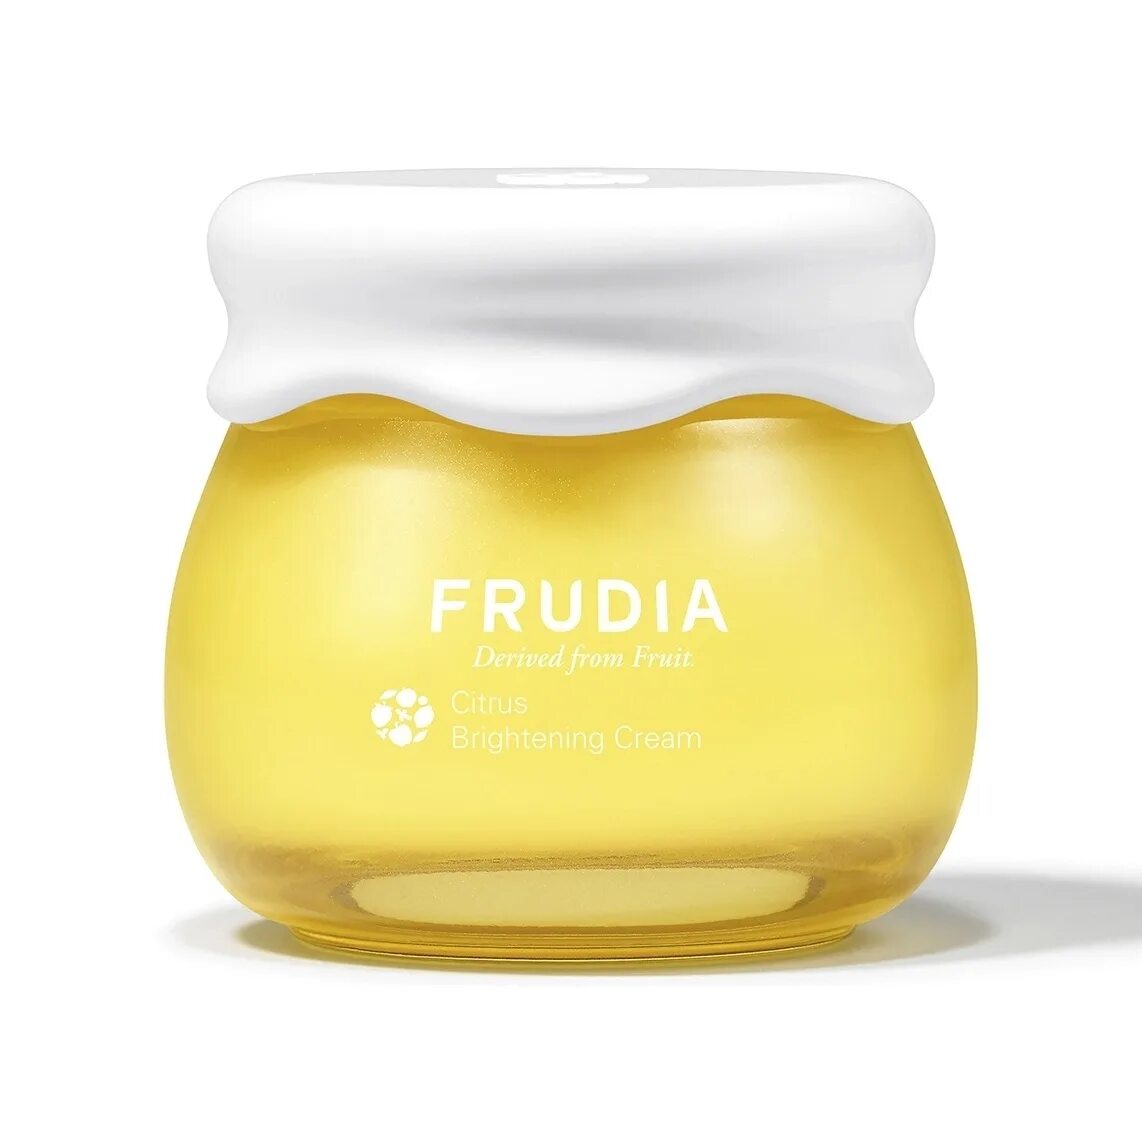 Frudia Citrus. Frudia крем. Сыворотка с витамином с Frudia. Frudia SPF 50.